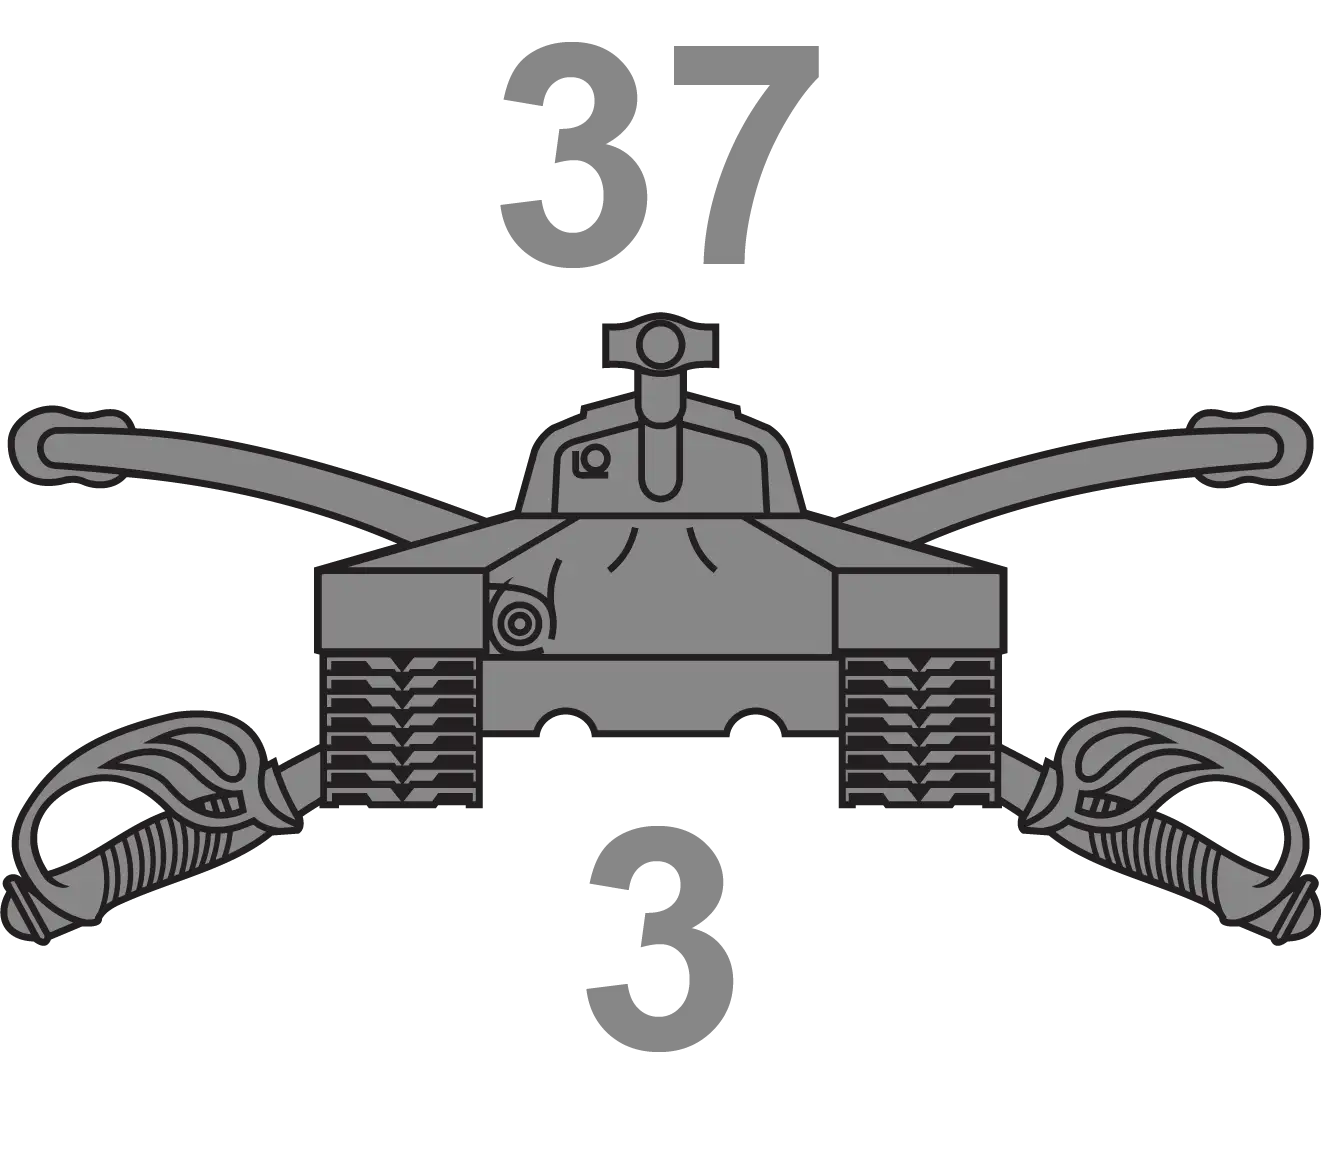 3-37 Armor Regiment